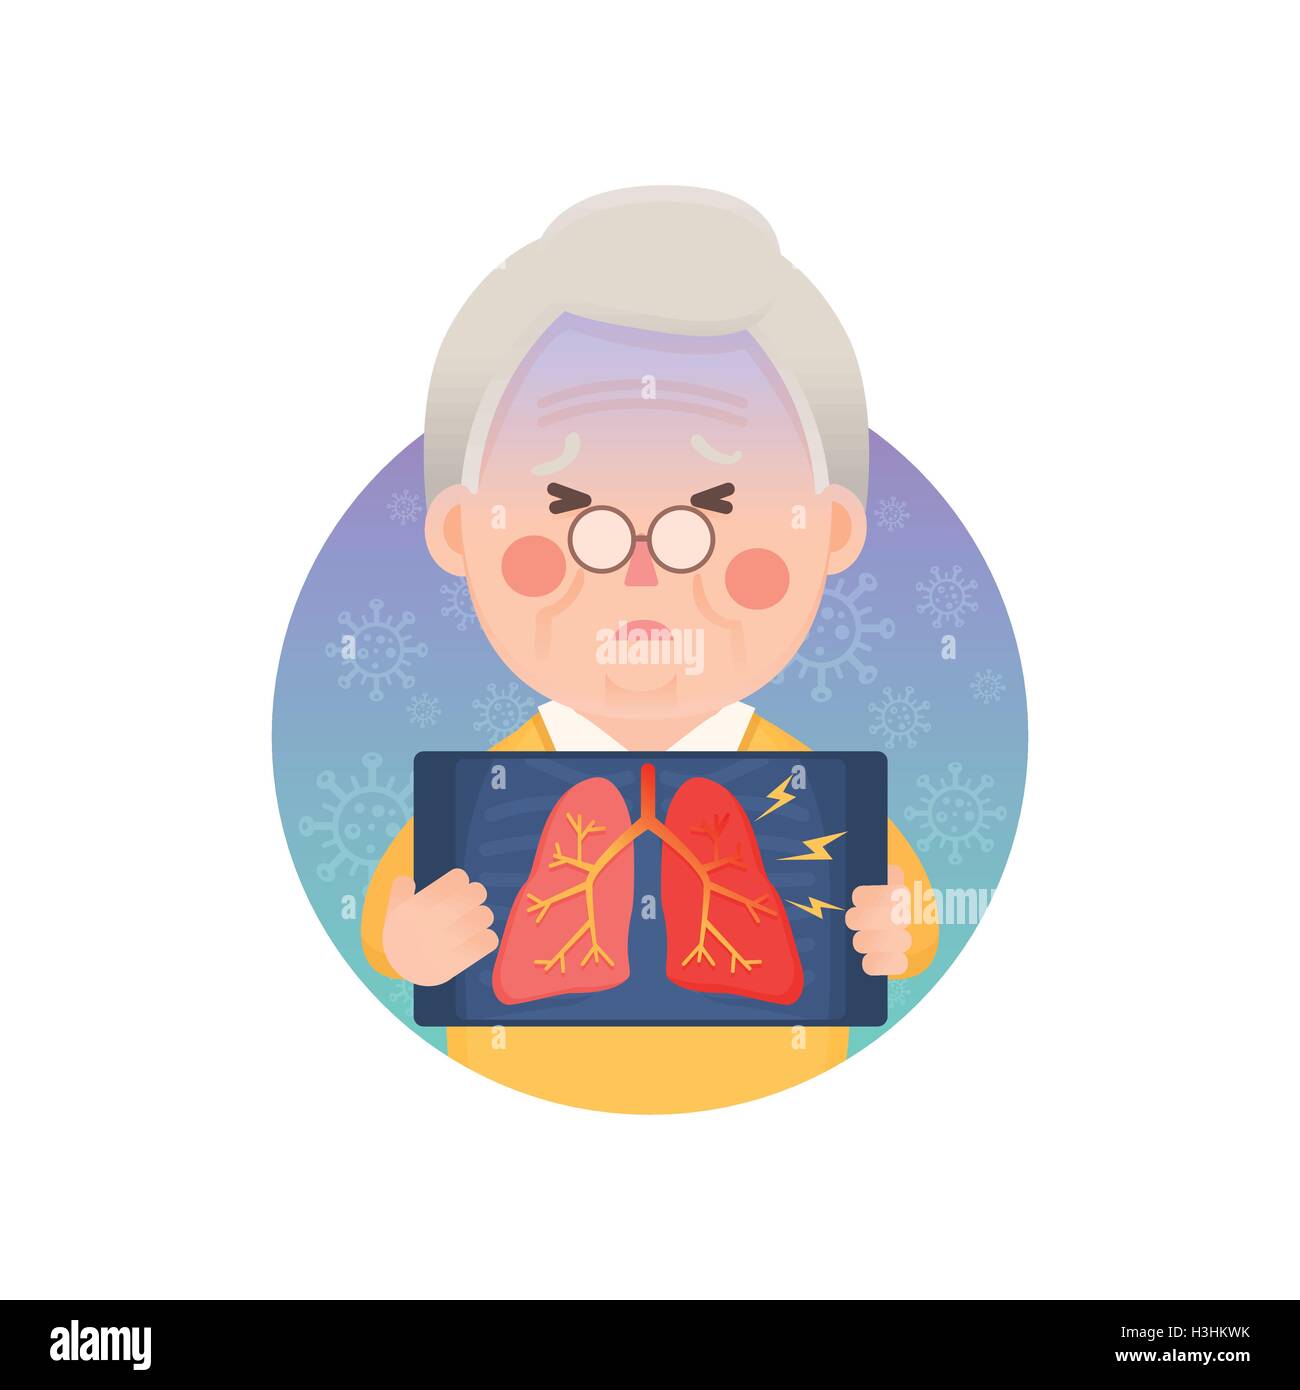 Illustrazione Vettoriale di Vecchio Uomo Azienda immagine a raggi X che mostra l'infiammazione del polmone problema, personaggio dei cartoni animati Illustrazione Vettoriale